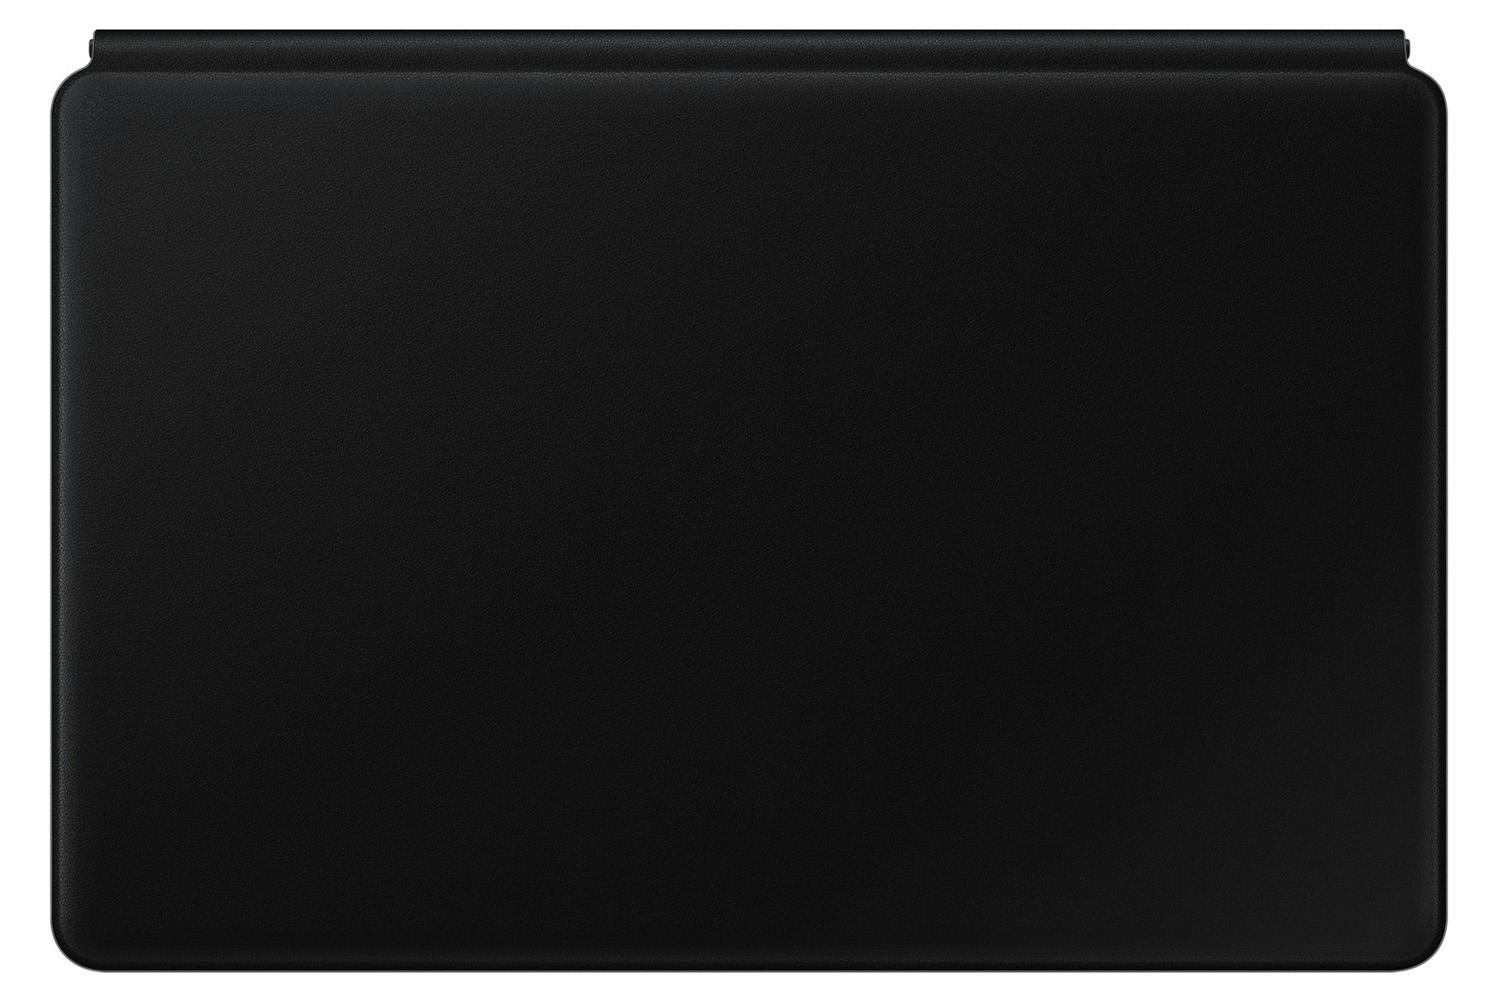 Samsung Galaxy Tab S7 Keyboard Cover Case | Black